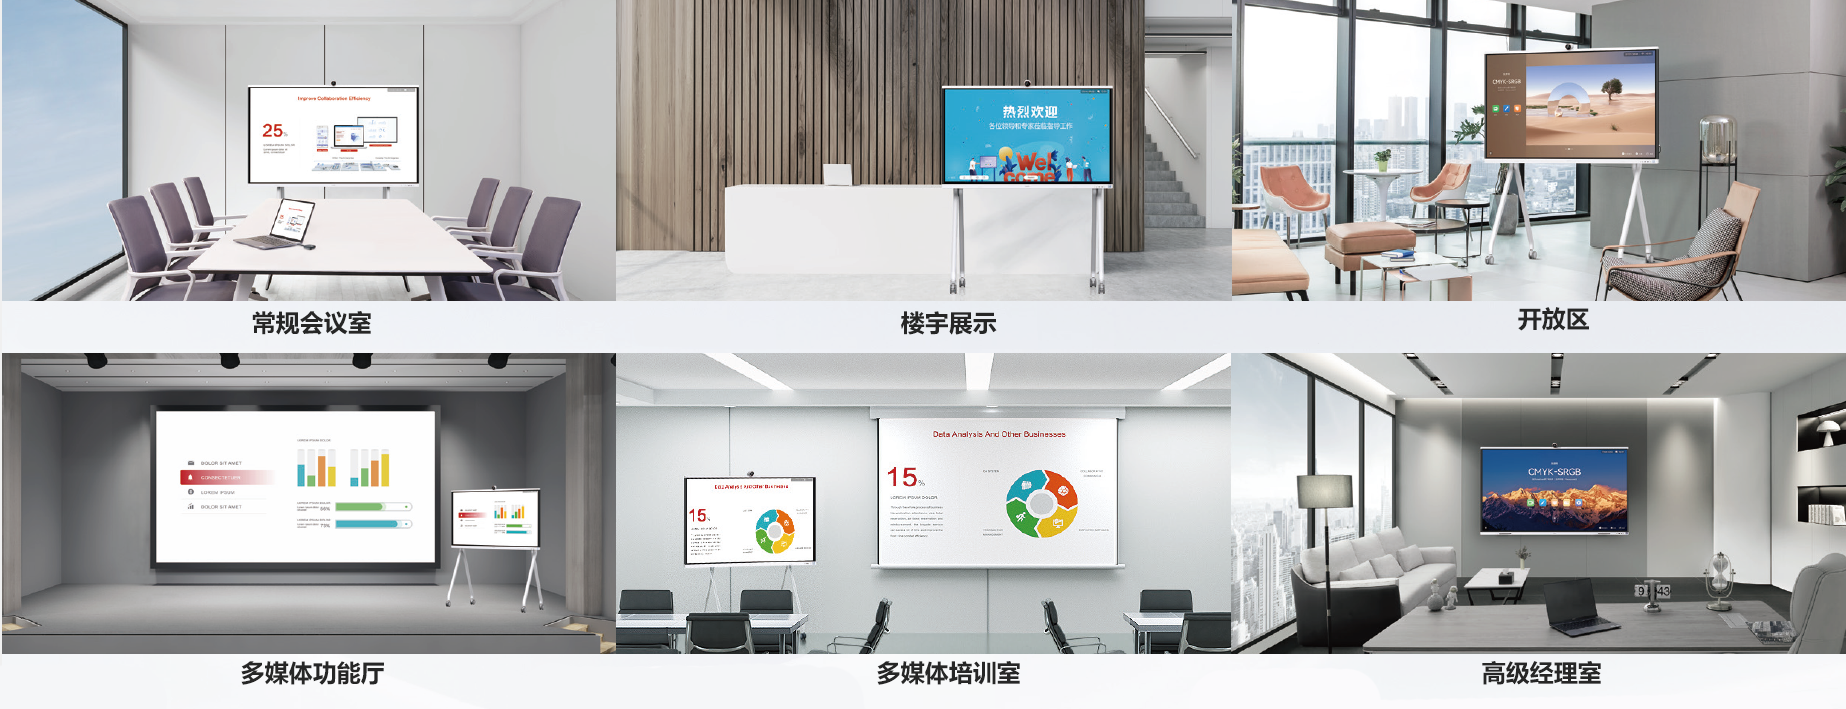 14、华为 Ideahub S2 系列办公宝会议平板-全场景智慧办公新空间.png